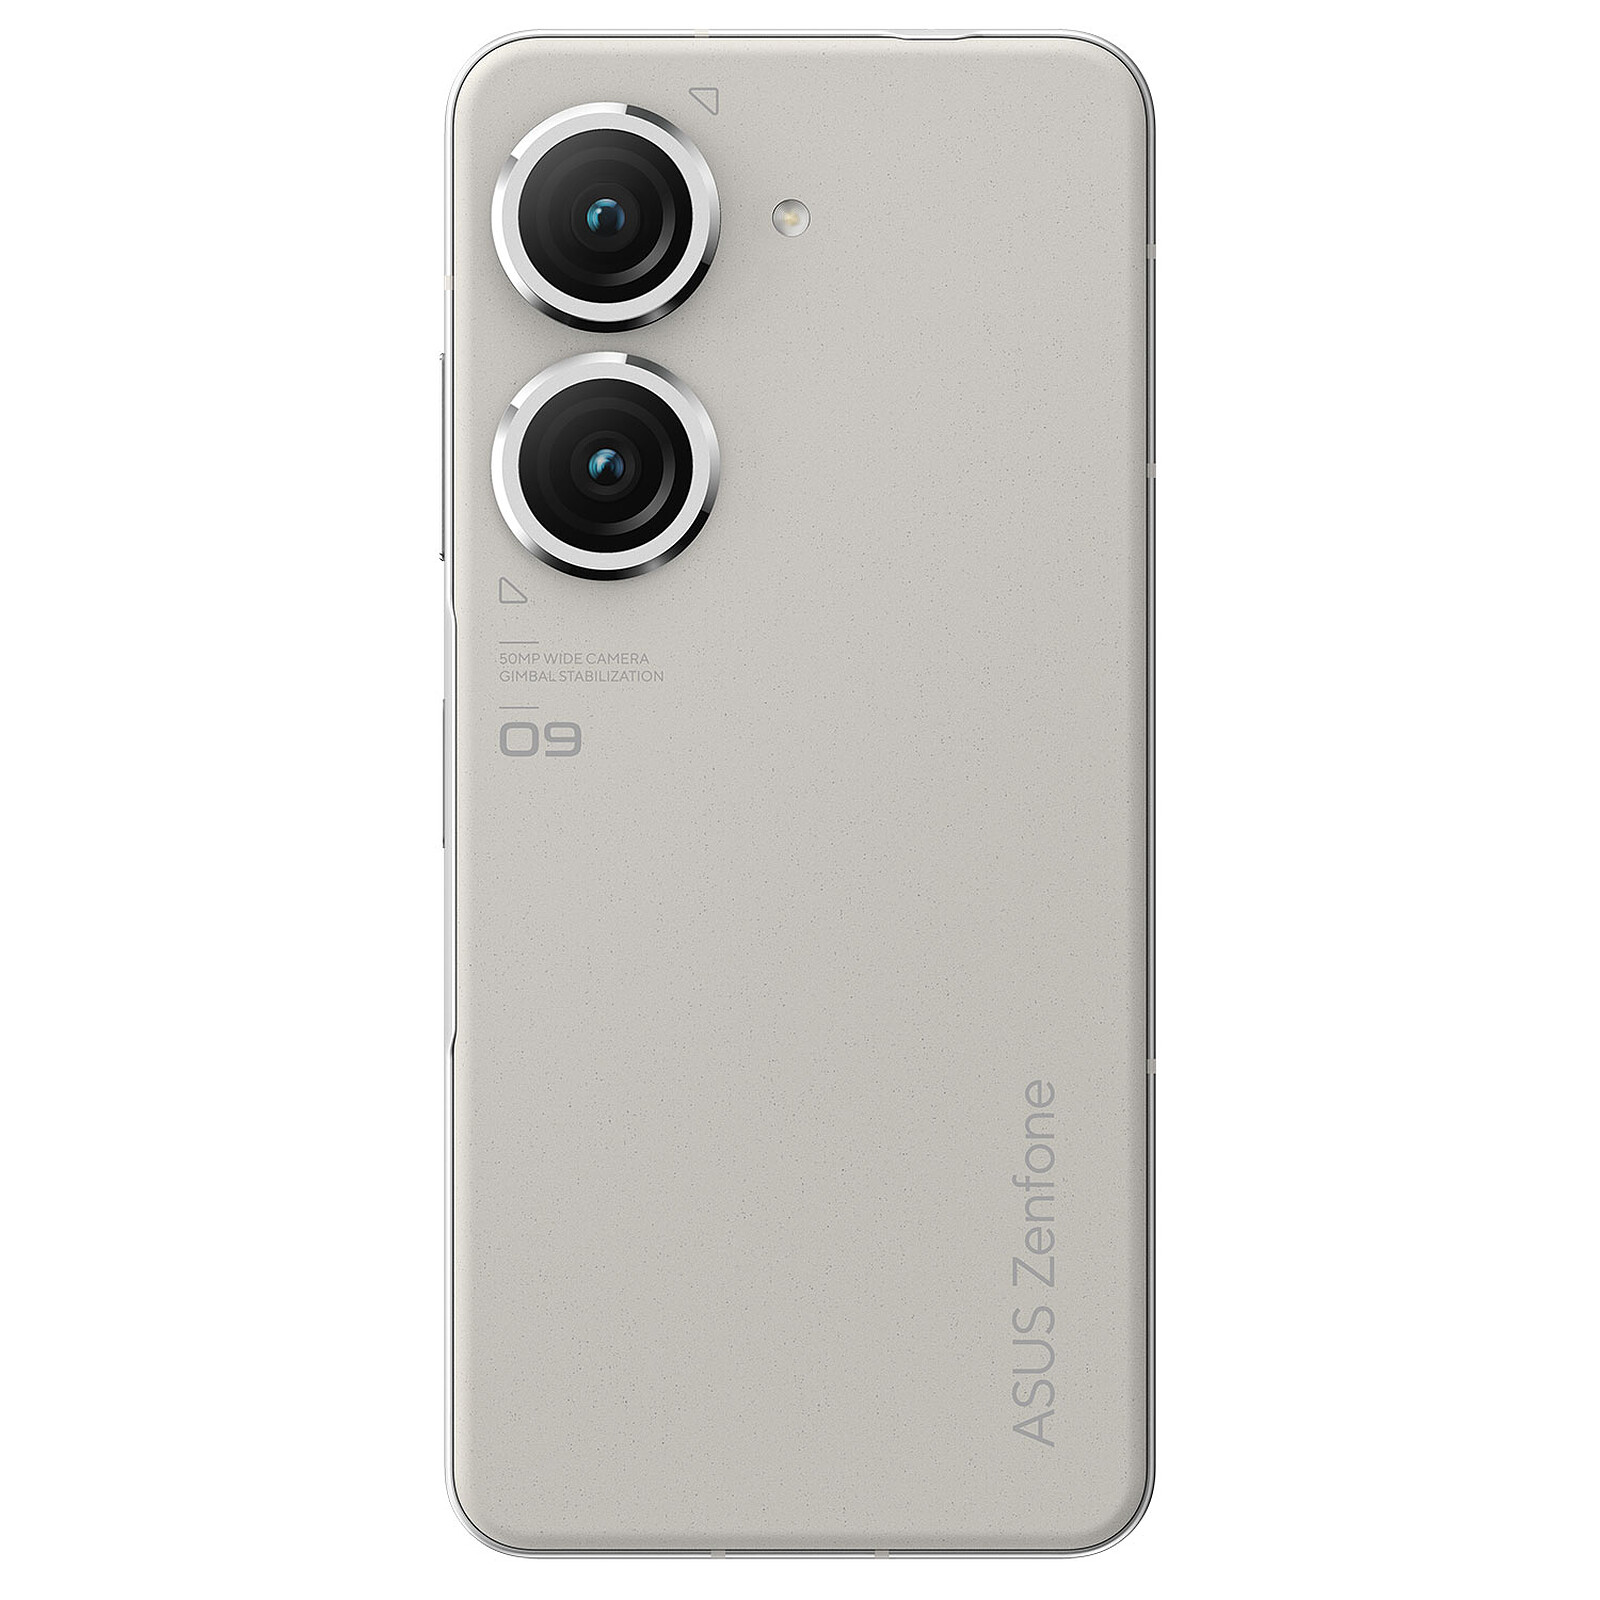 ASUS ZenFone 10 Noir (8 Go / 256 Go) - Mobile & smartphone - Garantie 3 ans  LDLC